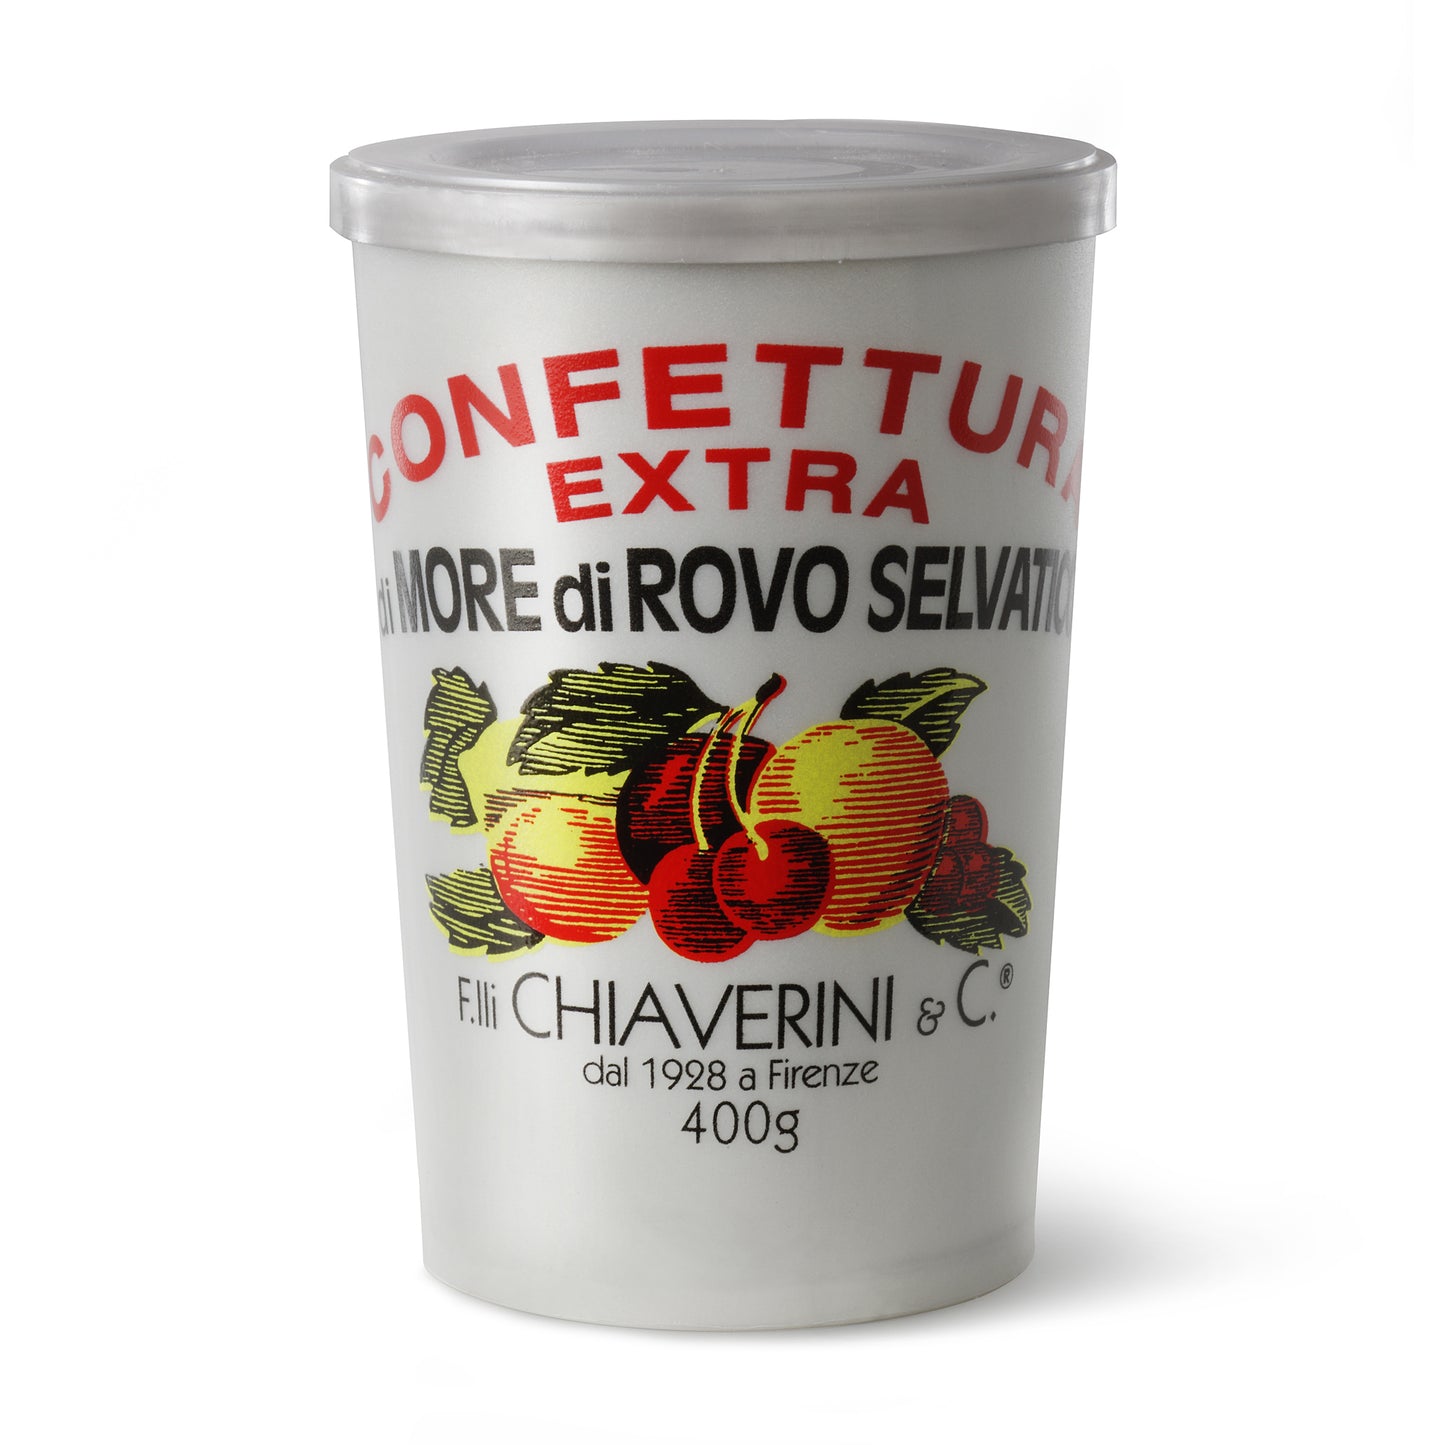 F.IIi Chiaverini &amp; Co Confettura Extra di More di Rovo Selvatico (Mermelada de moras silvestres) 400 gramos